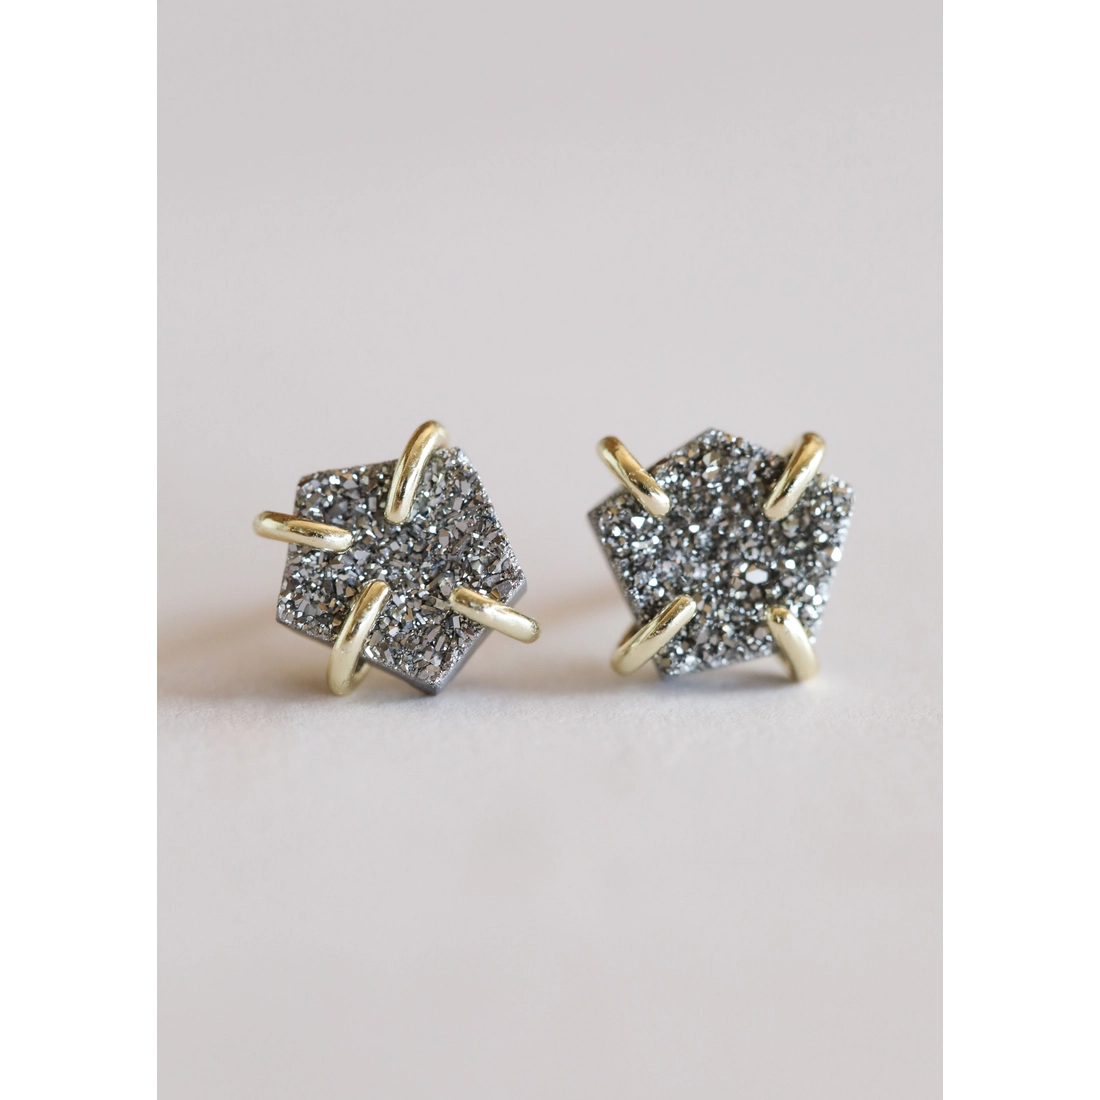 Silver druzy prong earrings